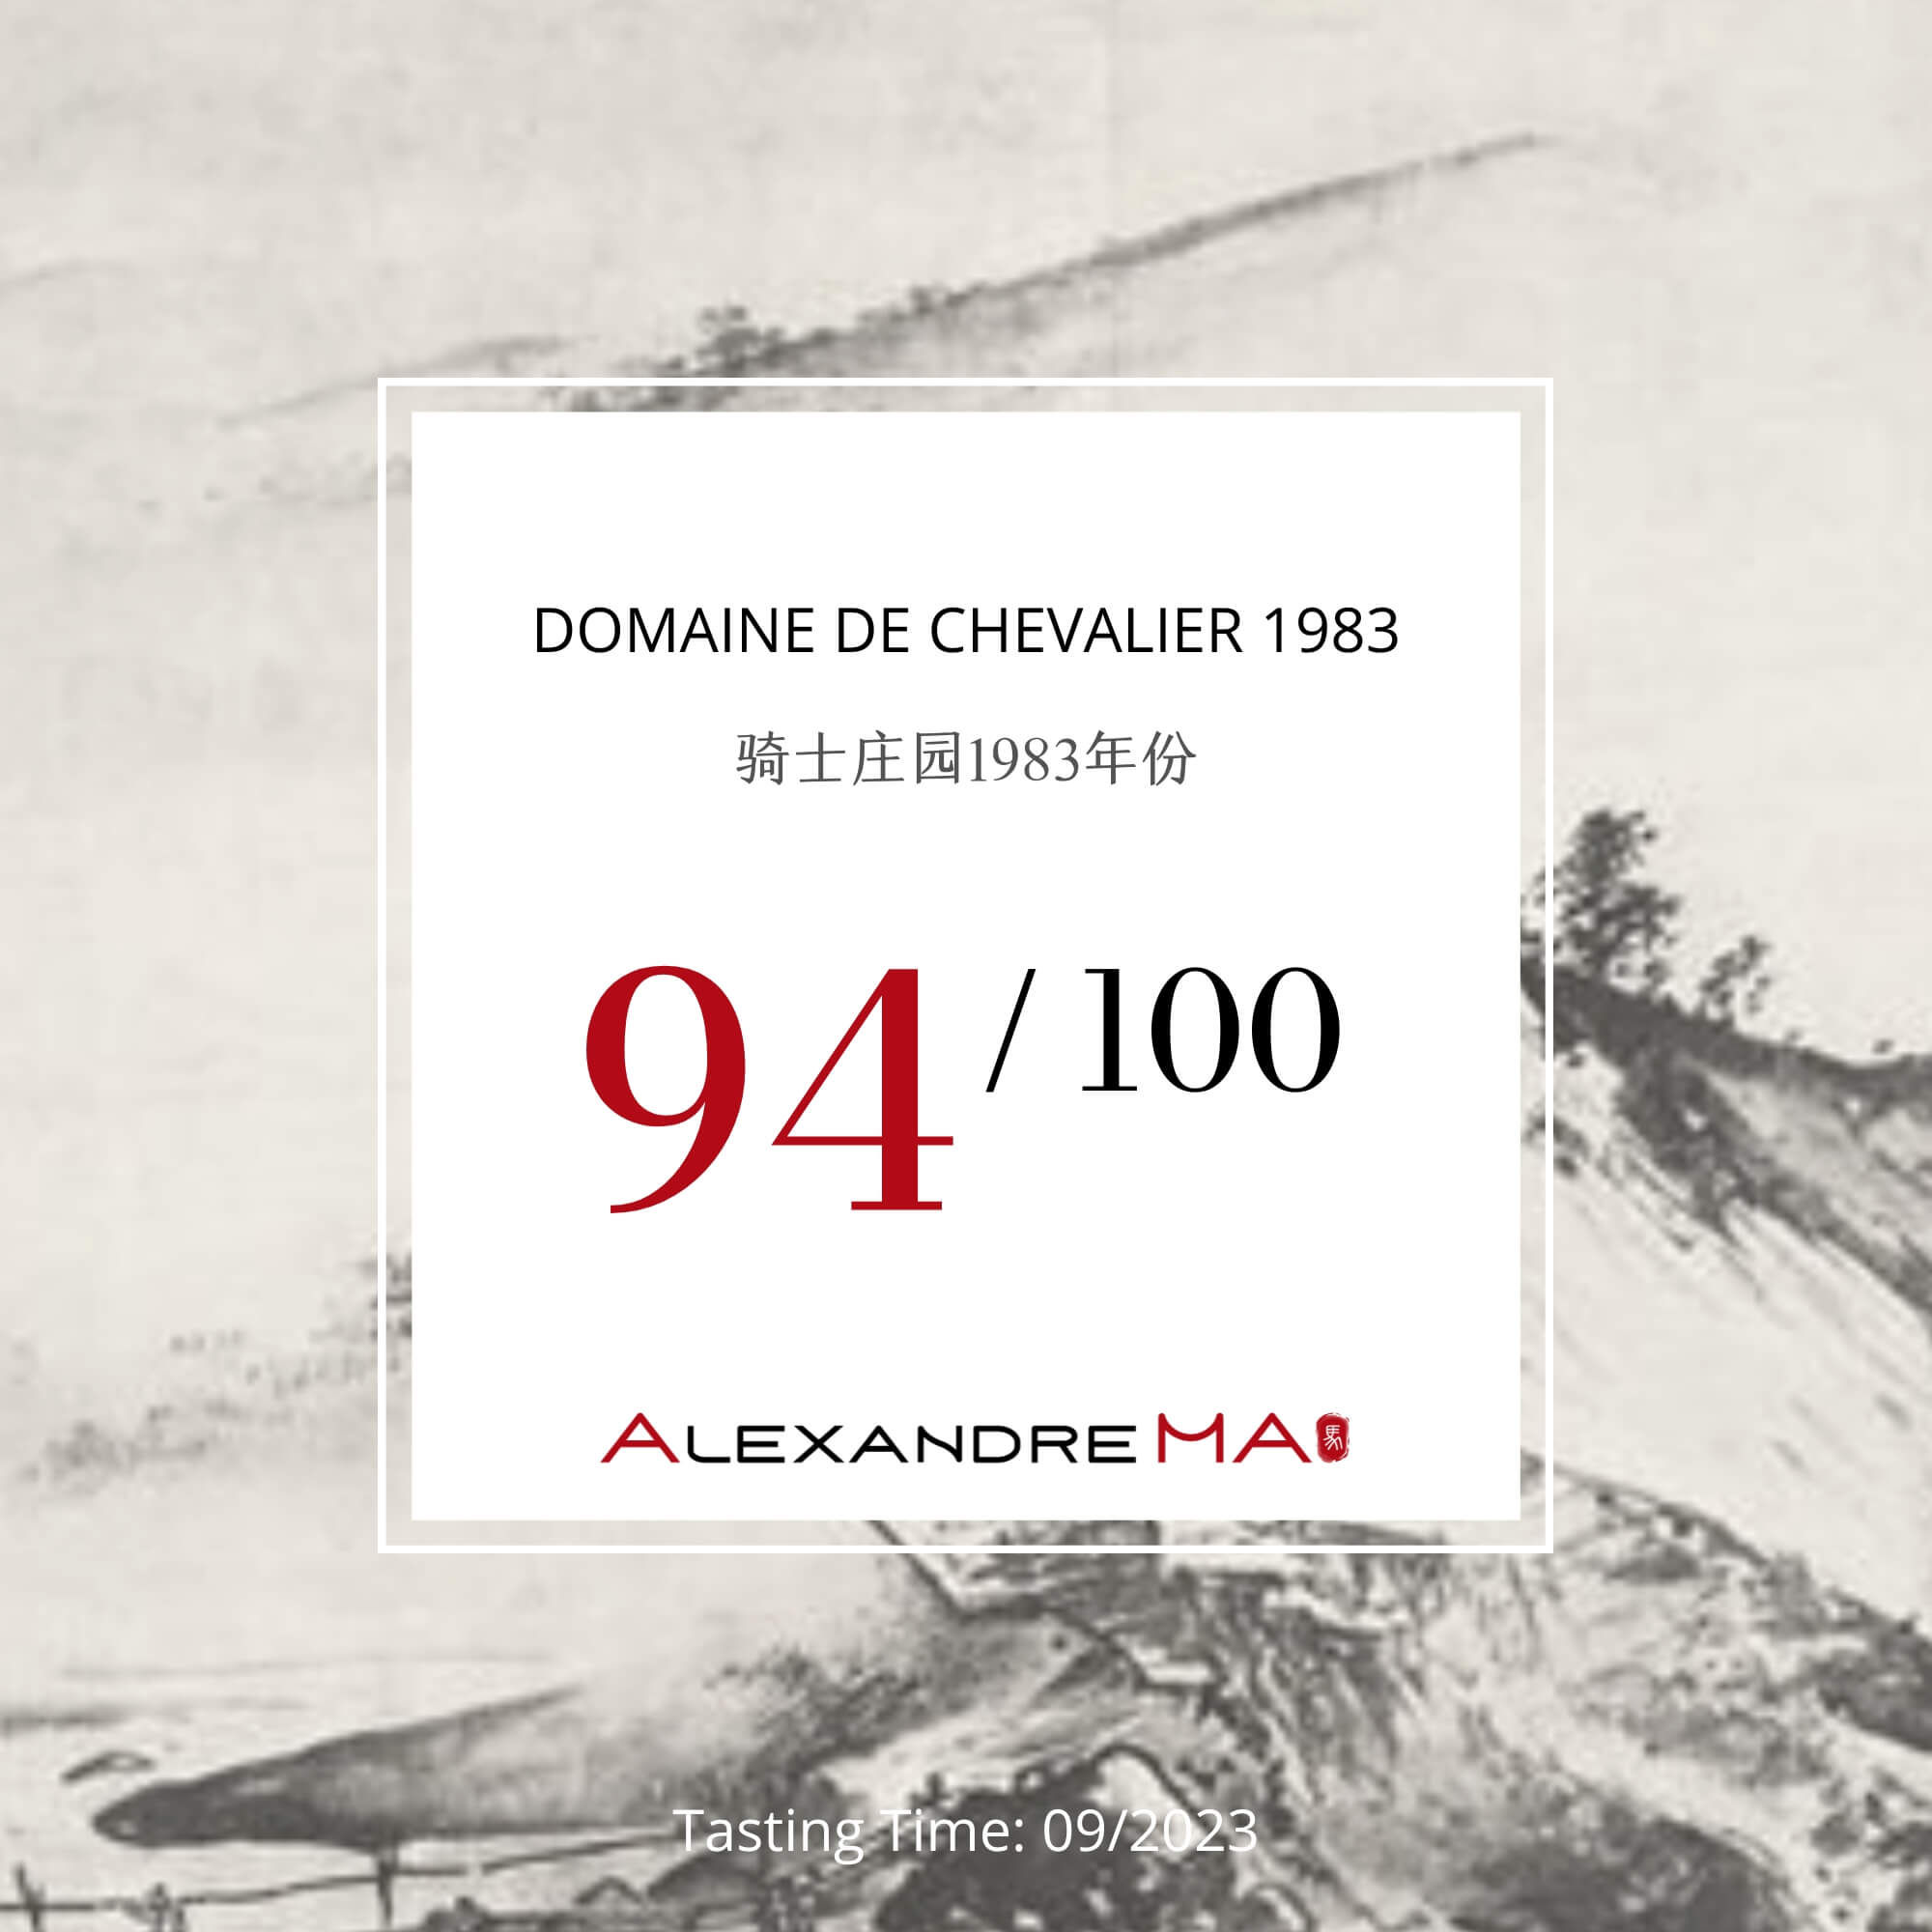 Domaine de Chevalier 1983 - Alexandre MA